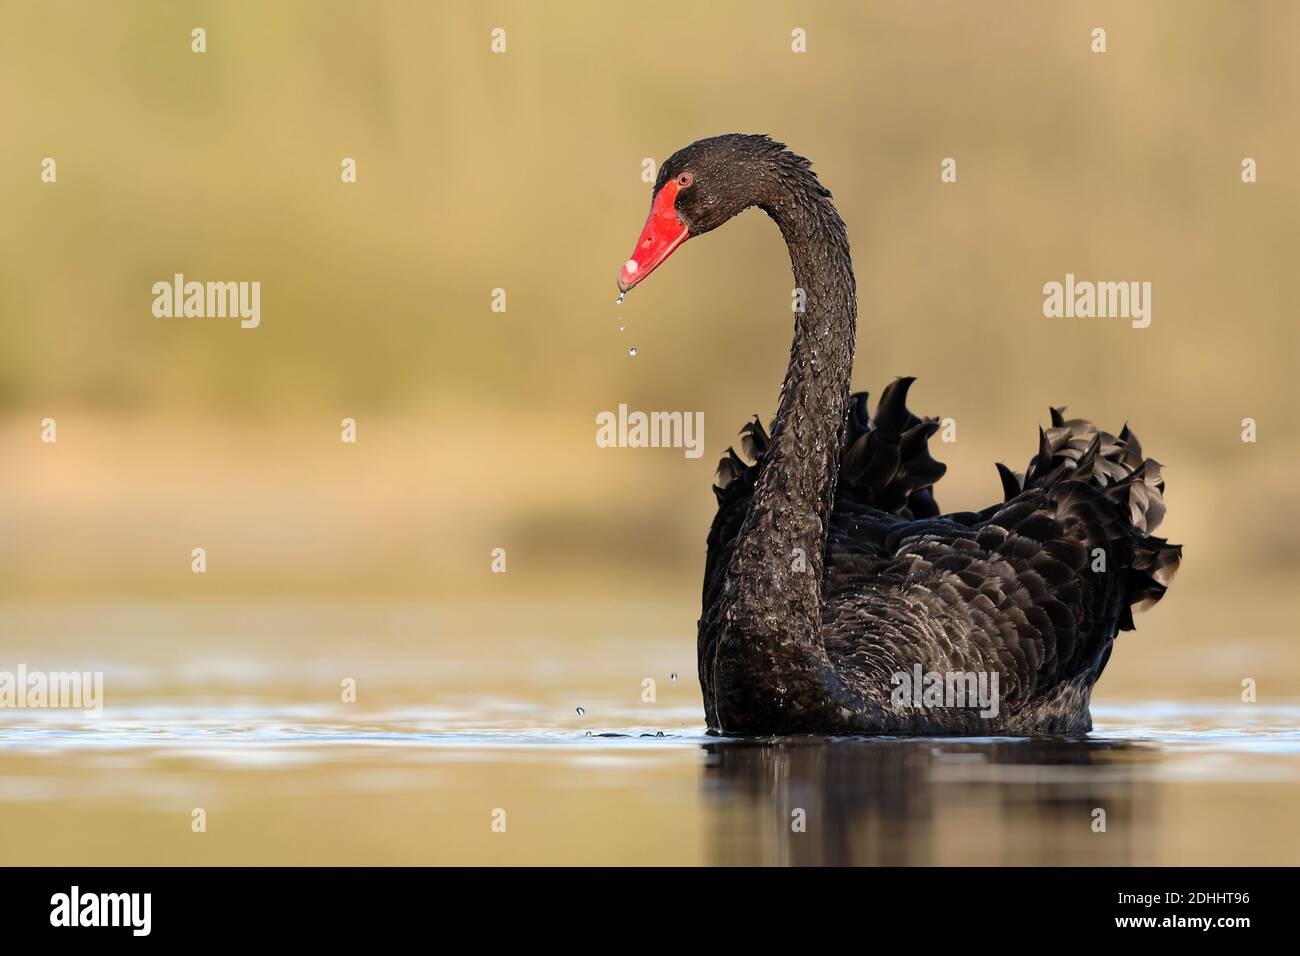 Trauerschwan schwimmt im Wasser, (Cygnus atratus), Stock Photo